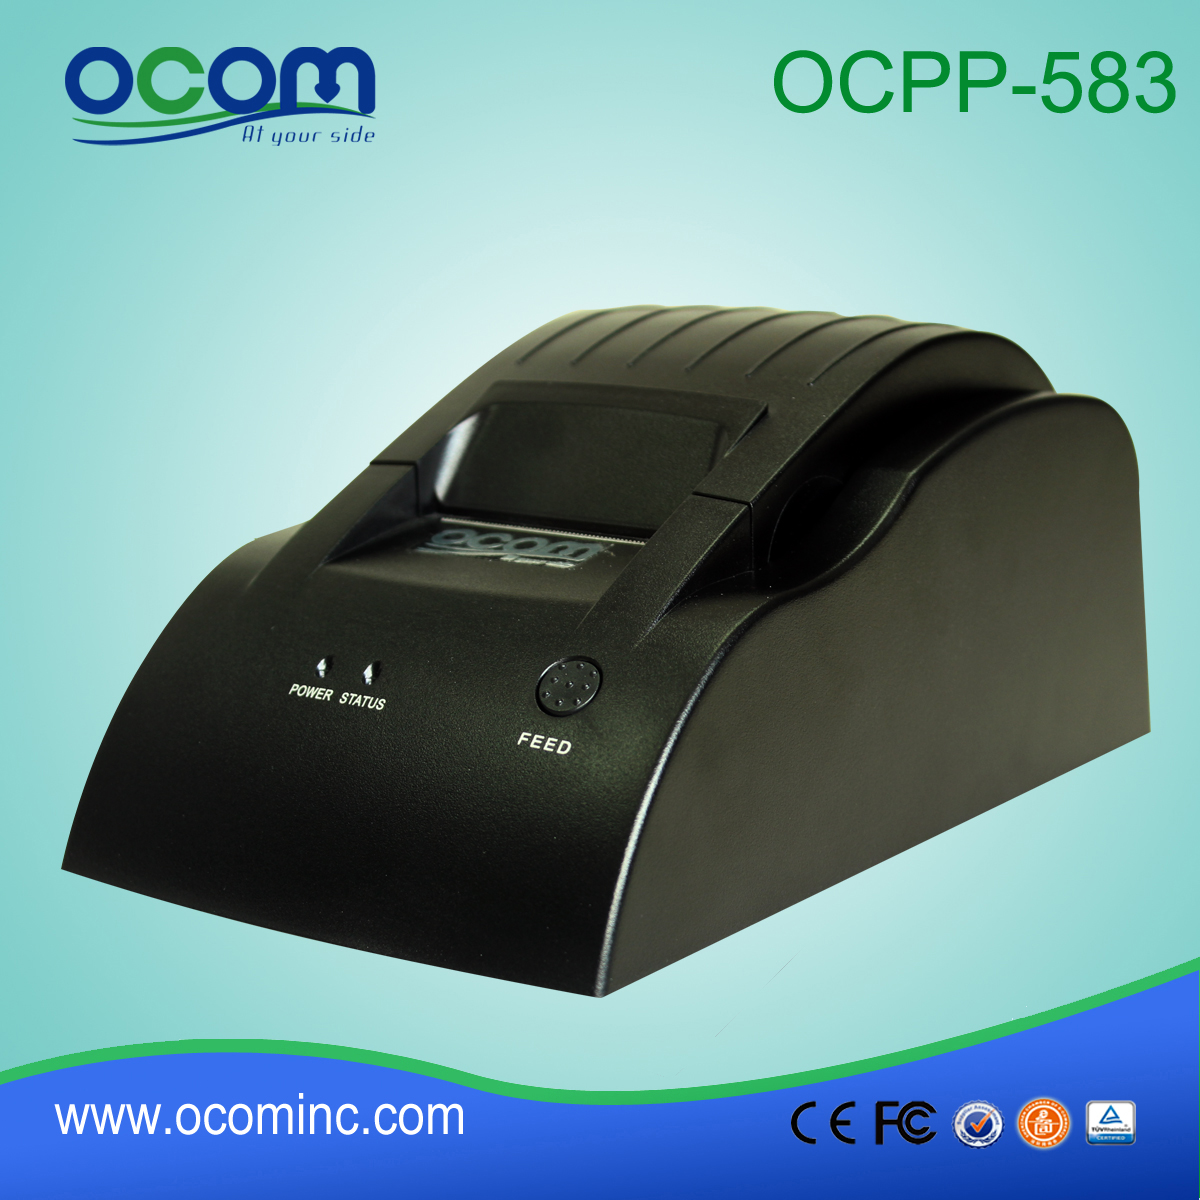 OCPP-583: 2015 جودة عالية رخيصة حدة طابعة حرارية